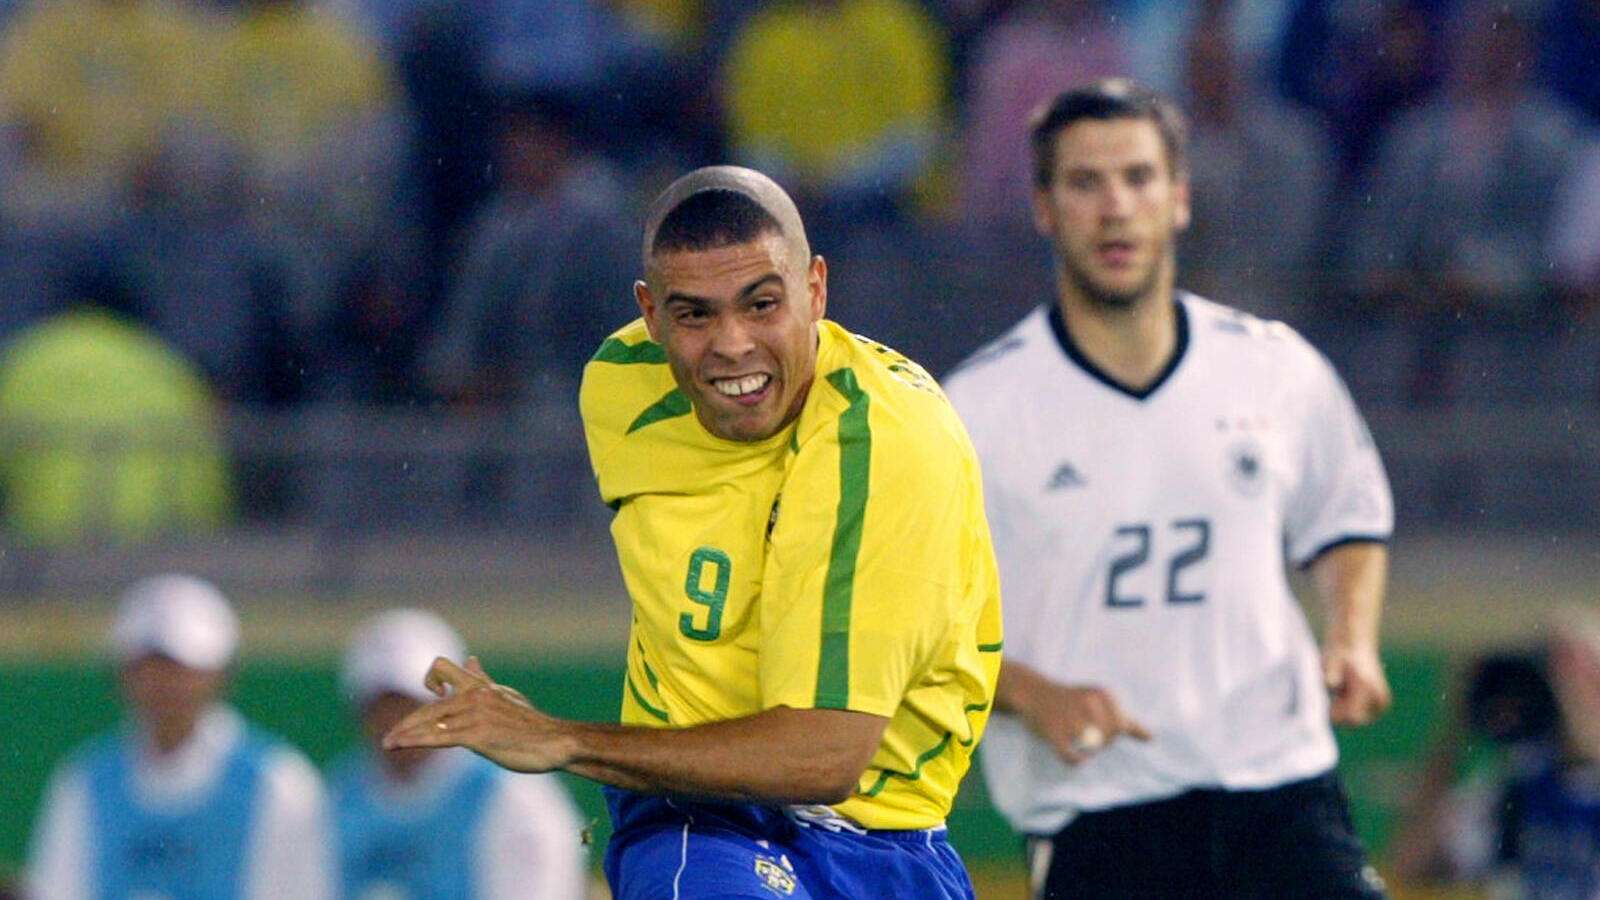 Ronaldo 2002